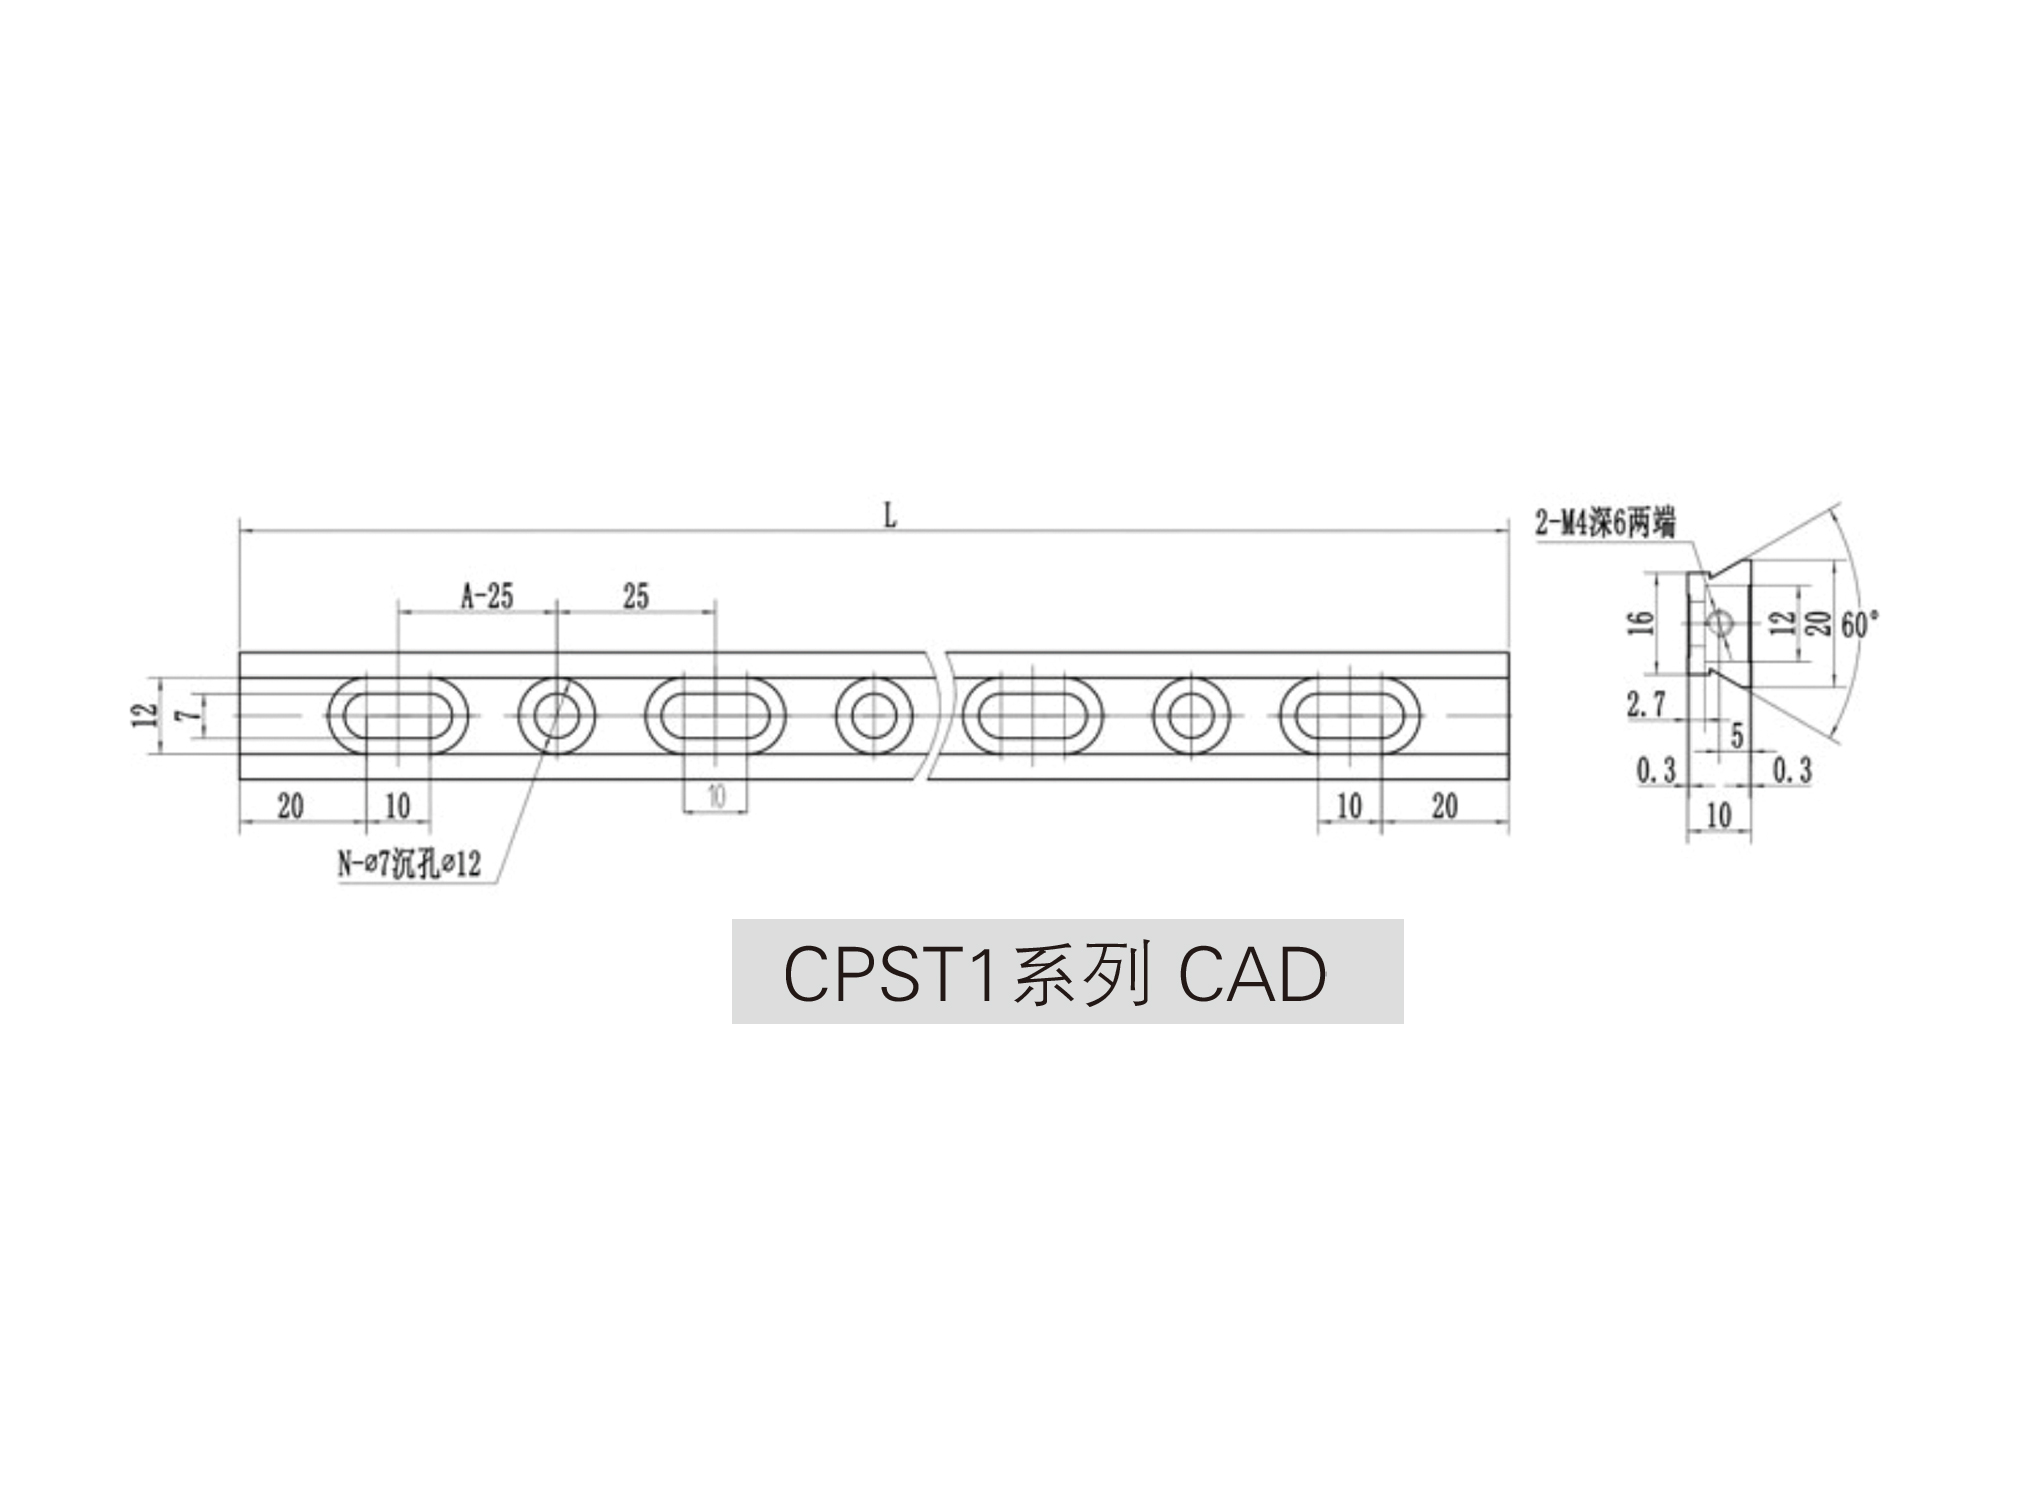 CPST1系列光学滑轨cad